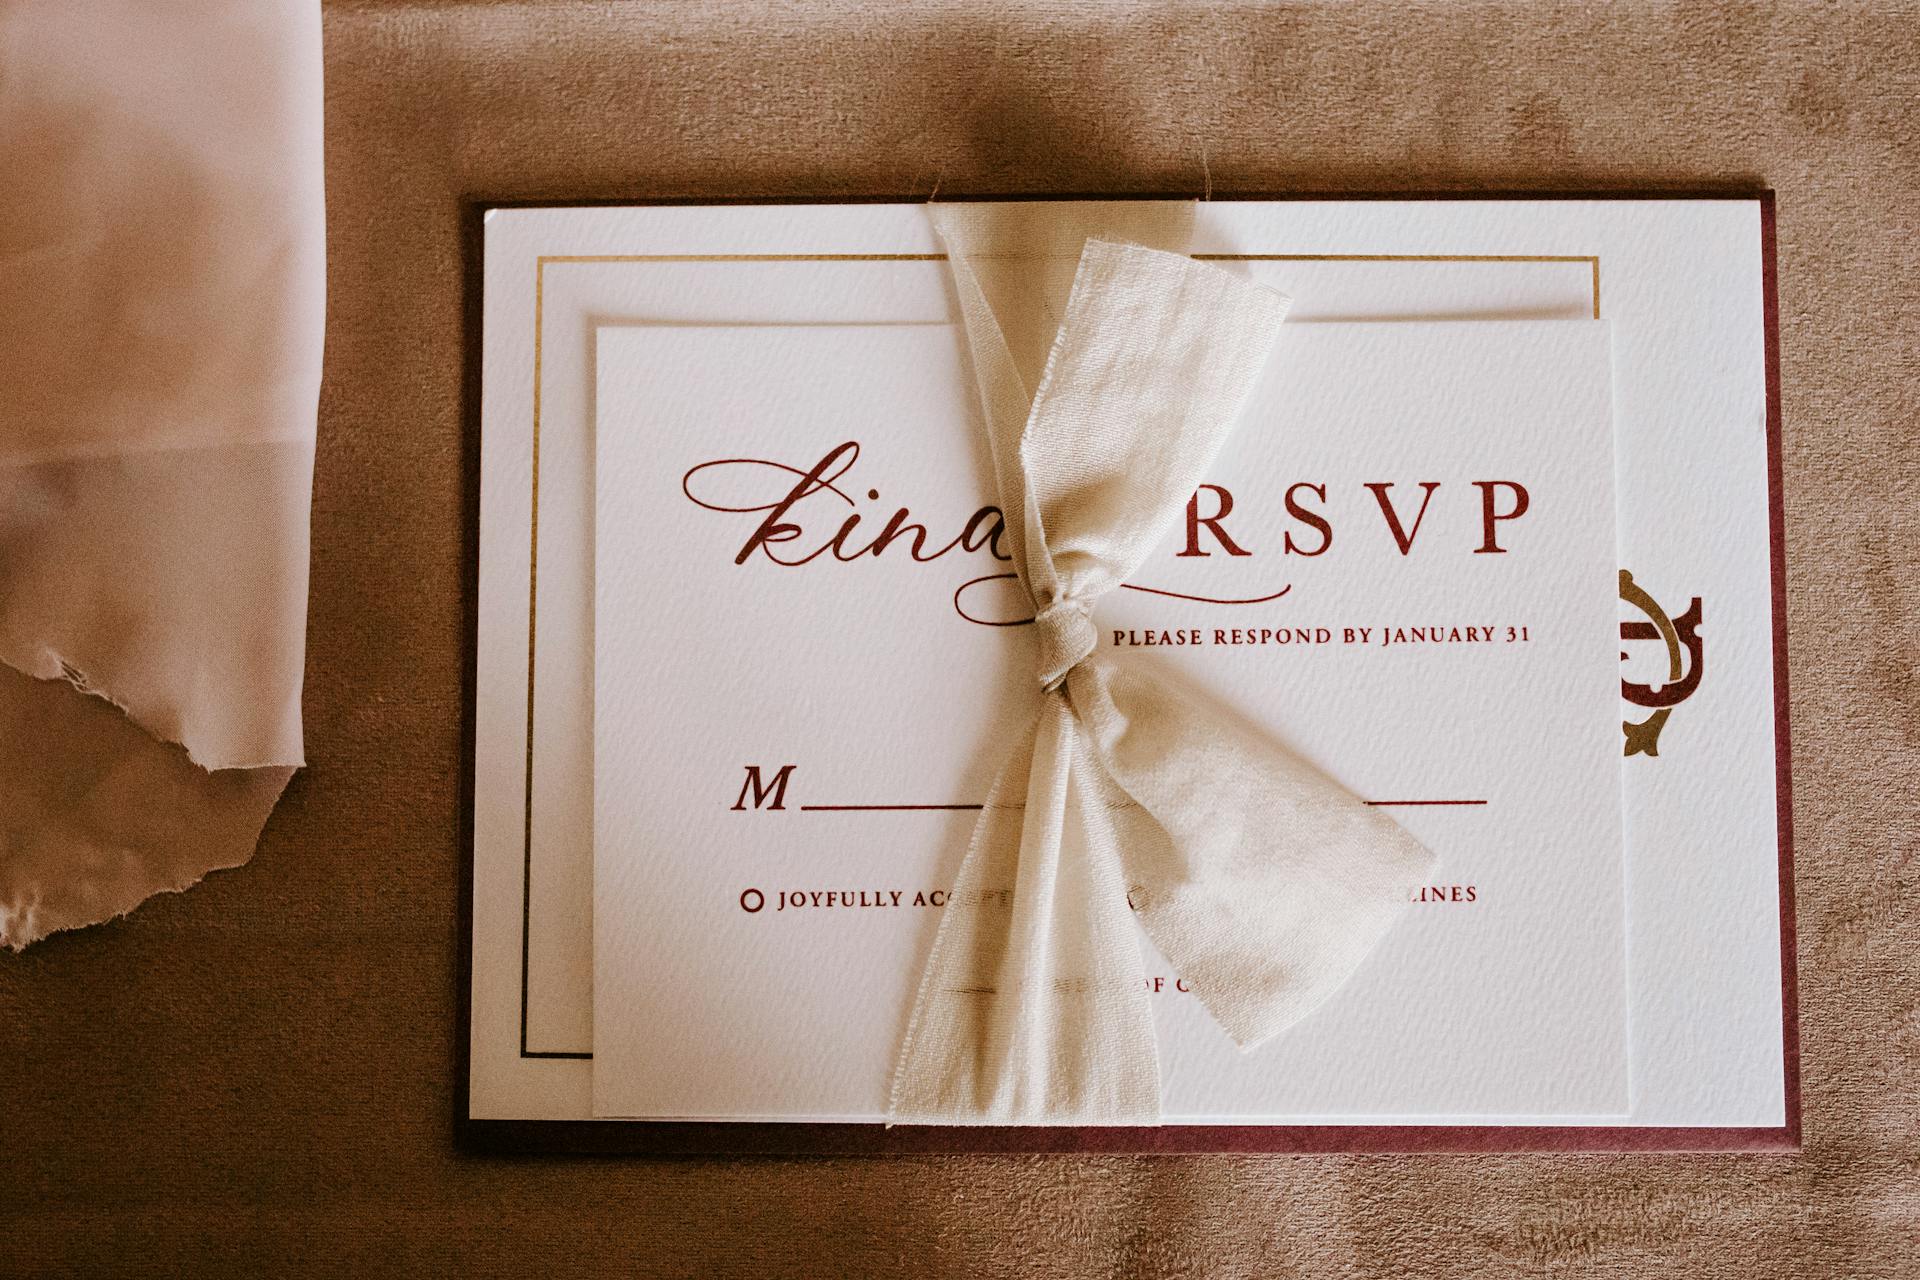 A wedding invitation | Source: Pexels